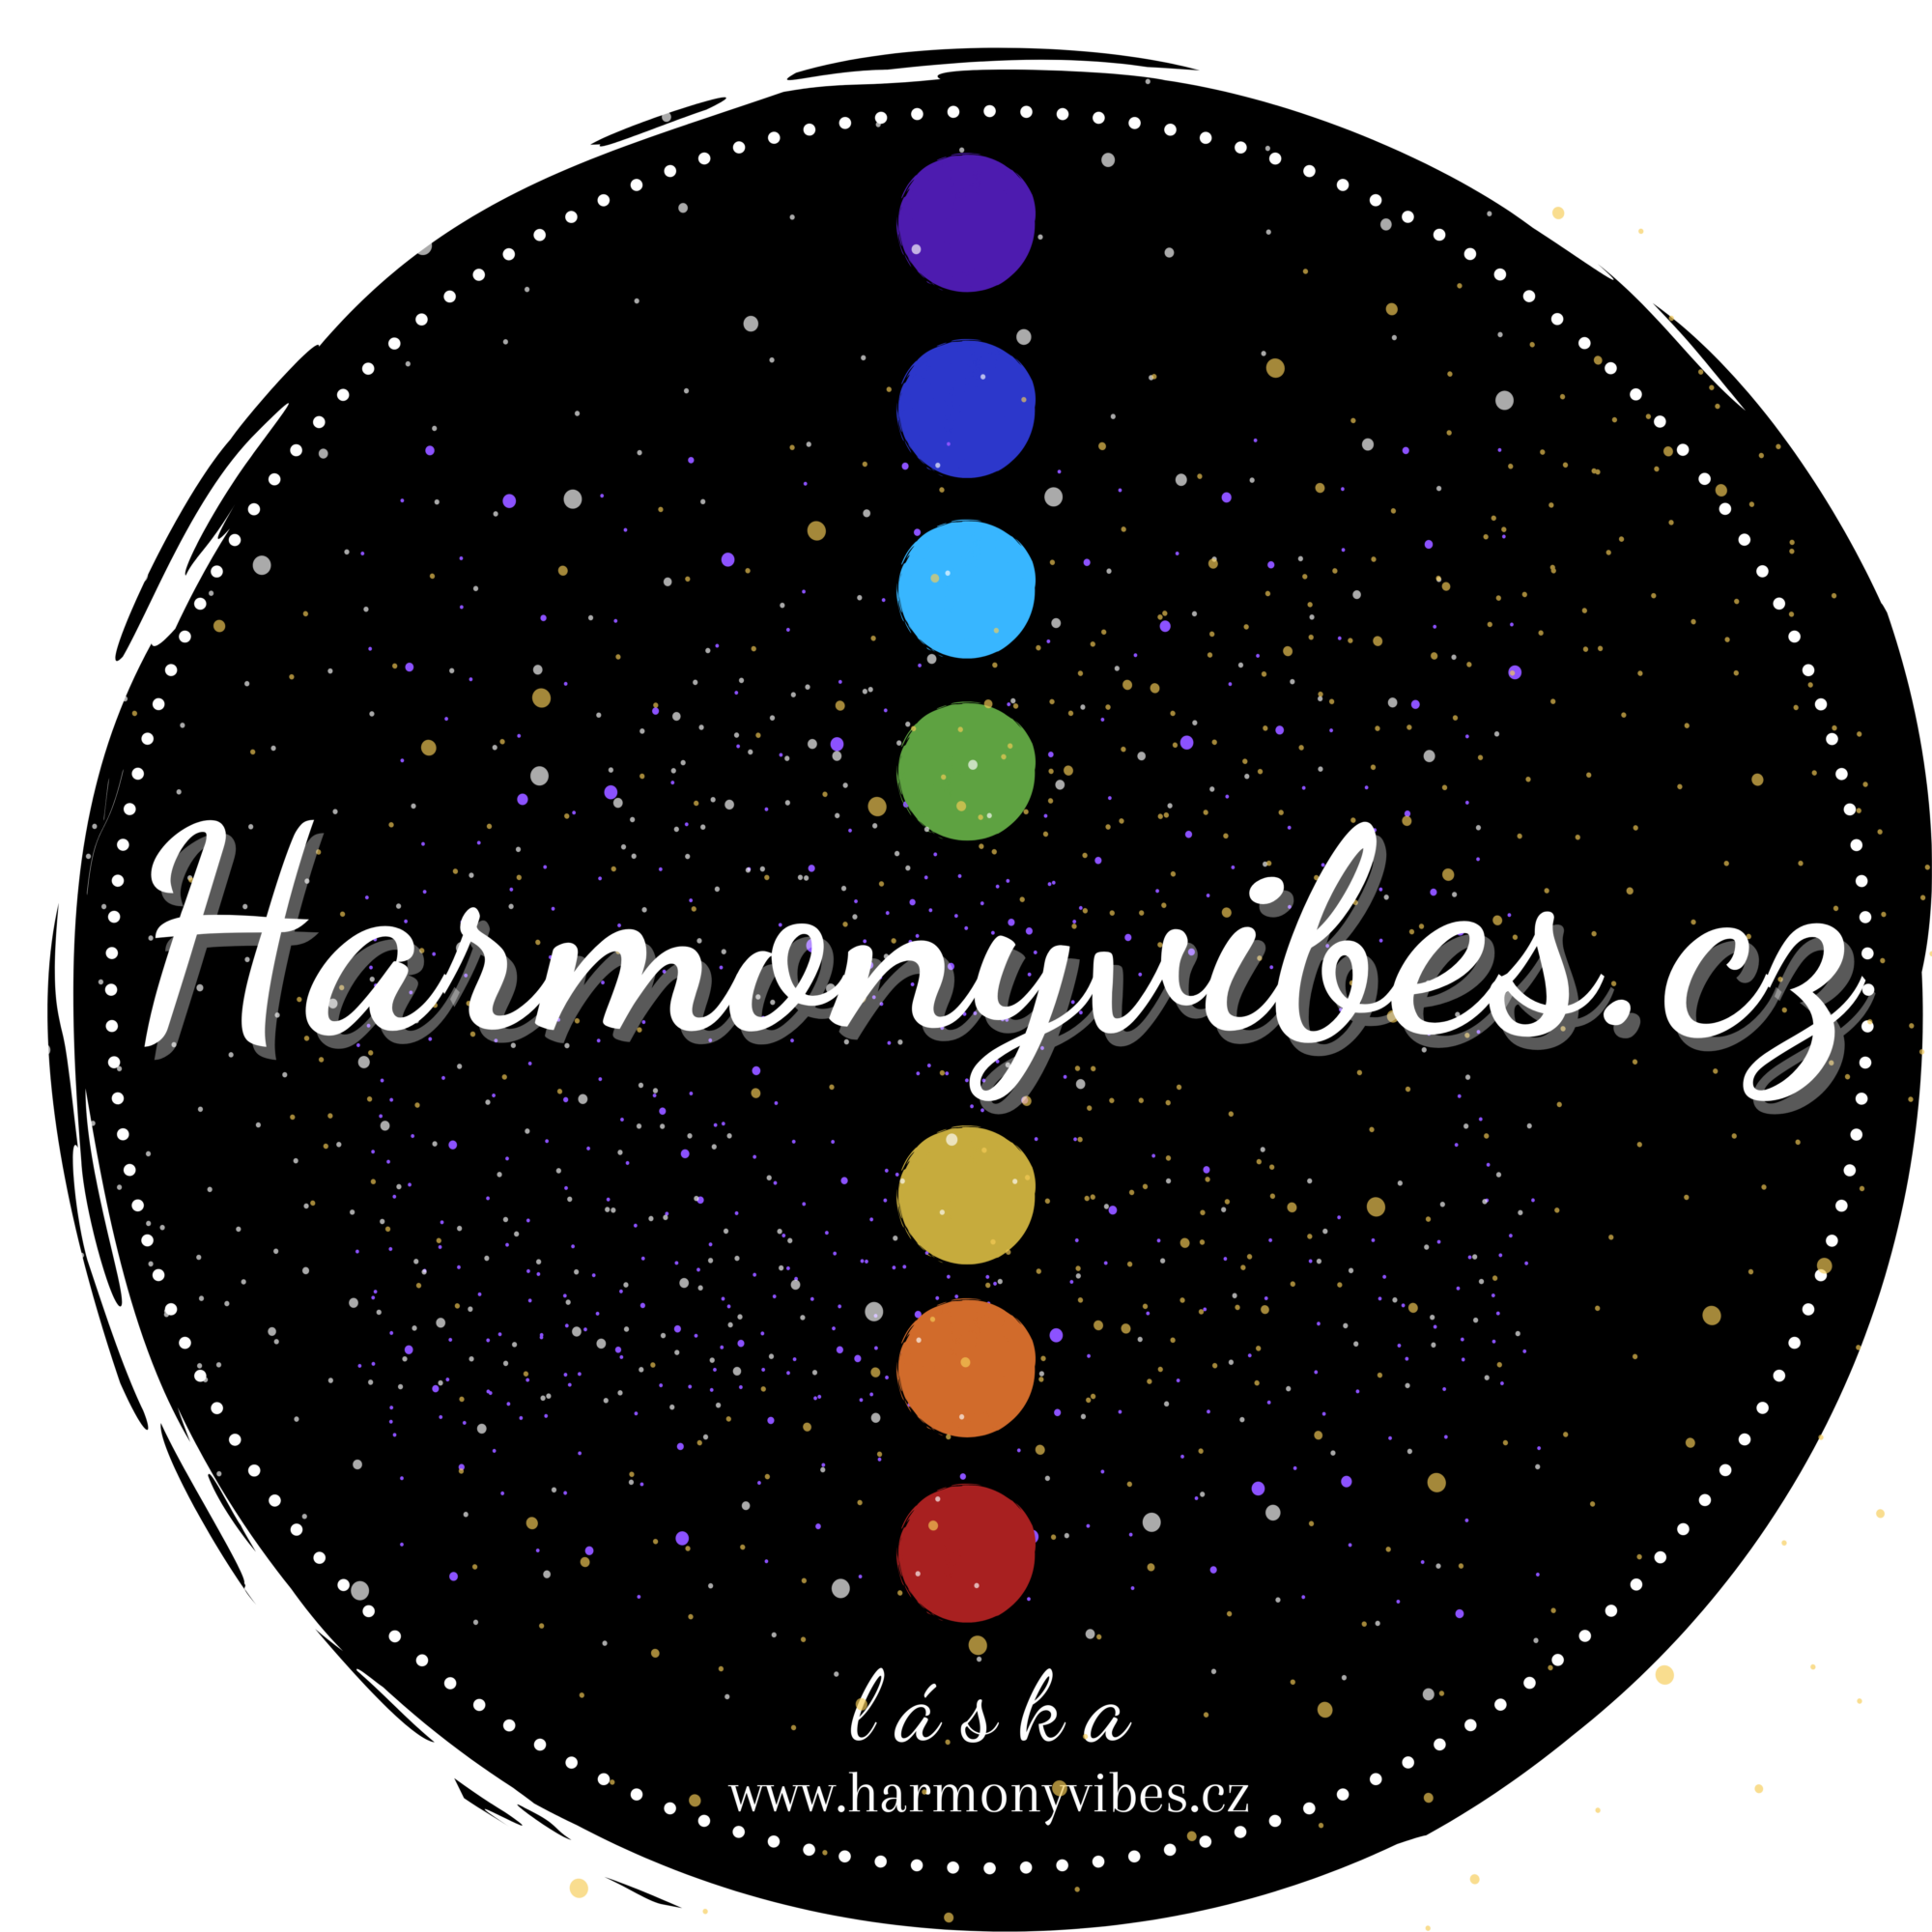 Harmonyvibes.cz